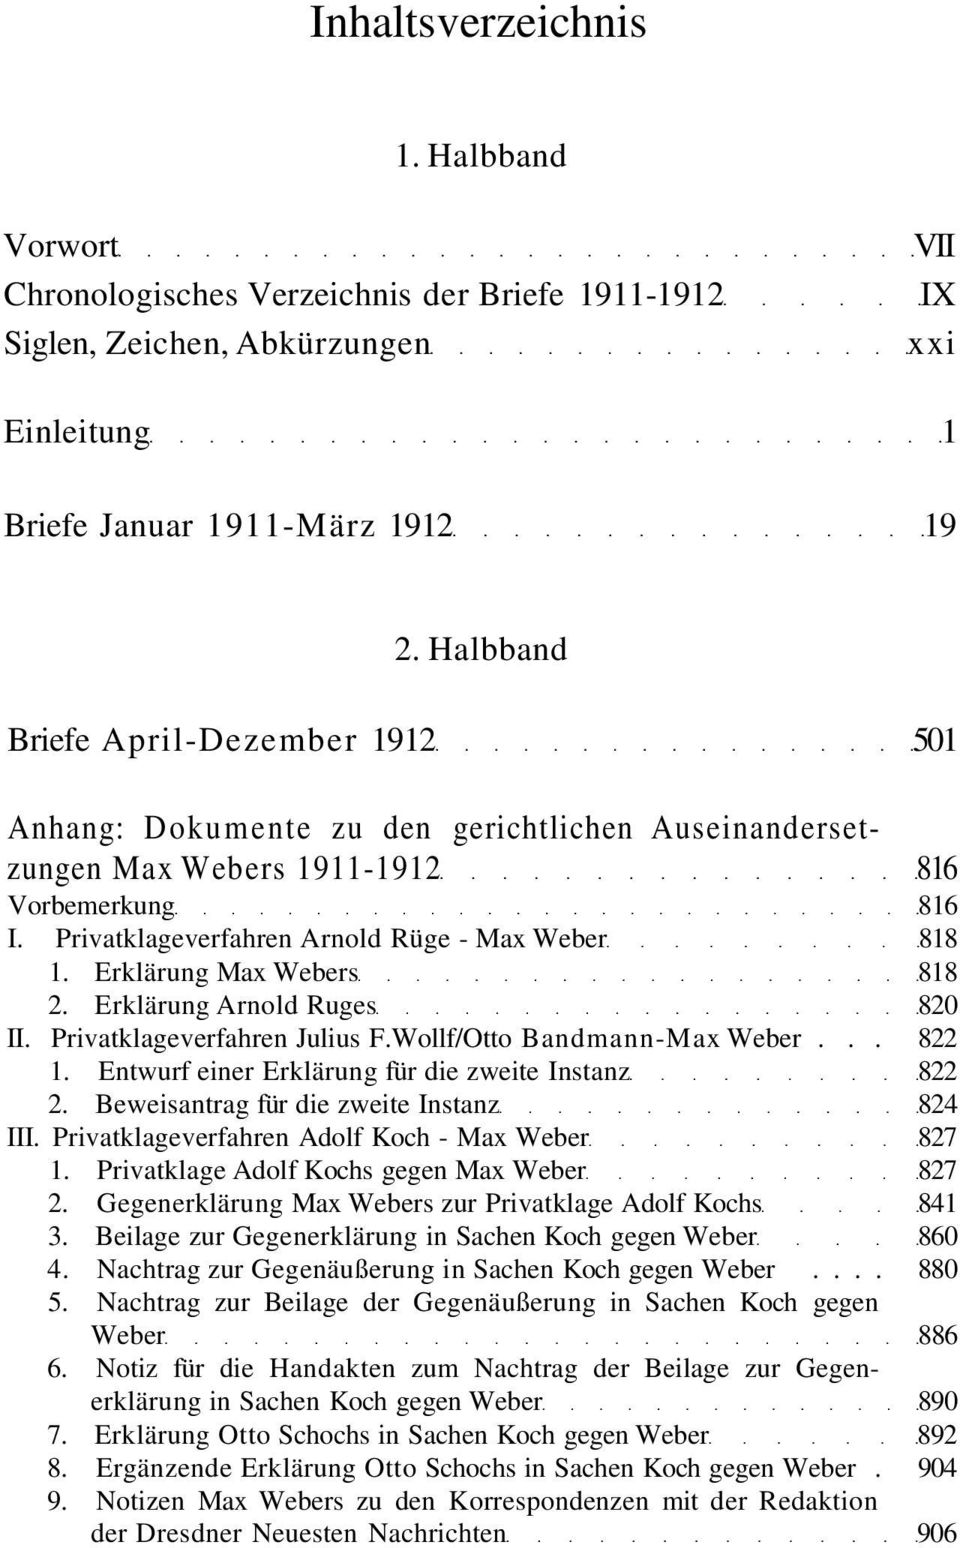 Erklärung Max Webers 818 2. Erklärung Arnold Ruges 820 II. Privatklageverfahren Julius F.Wollf/Otto Bandmann-Max Weber... 822 1. Entwurf einer Erklärung für die zweite Instanz 822 2.